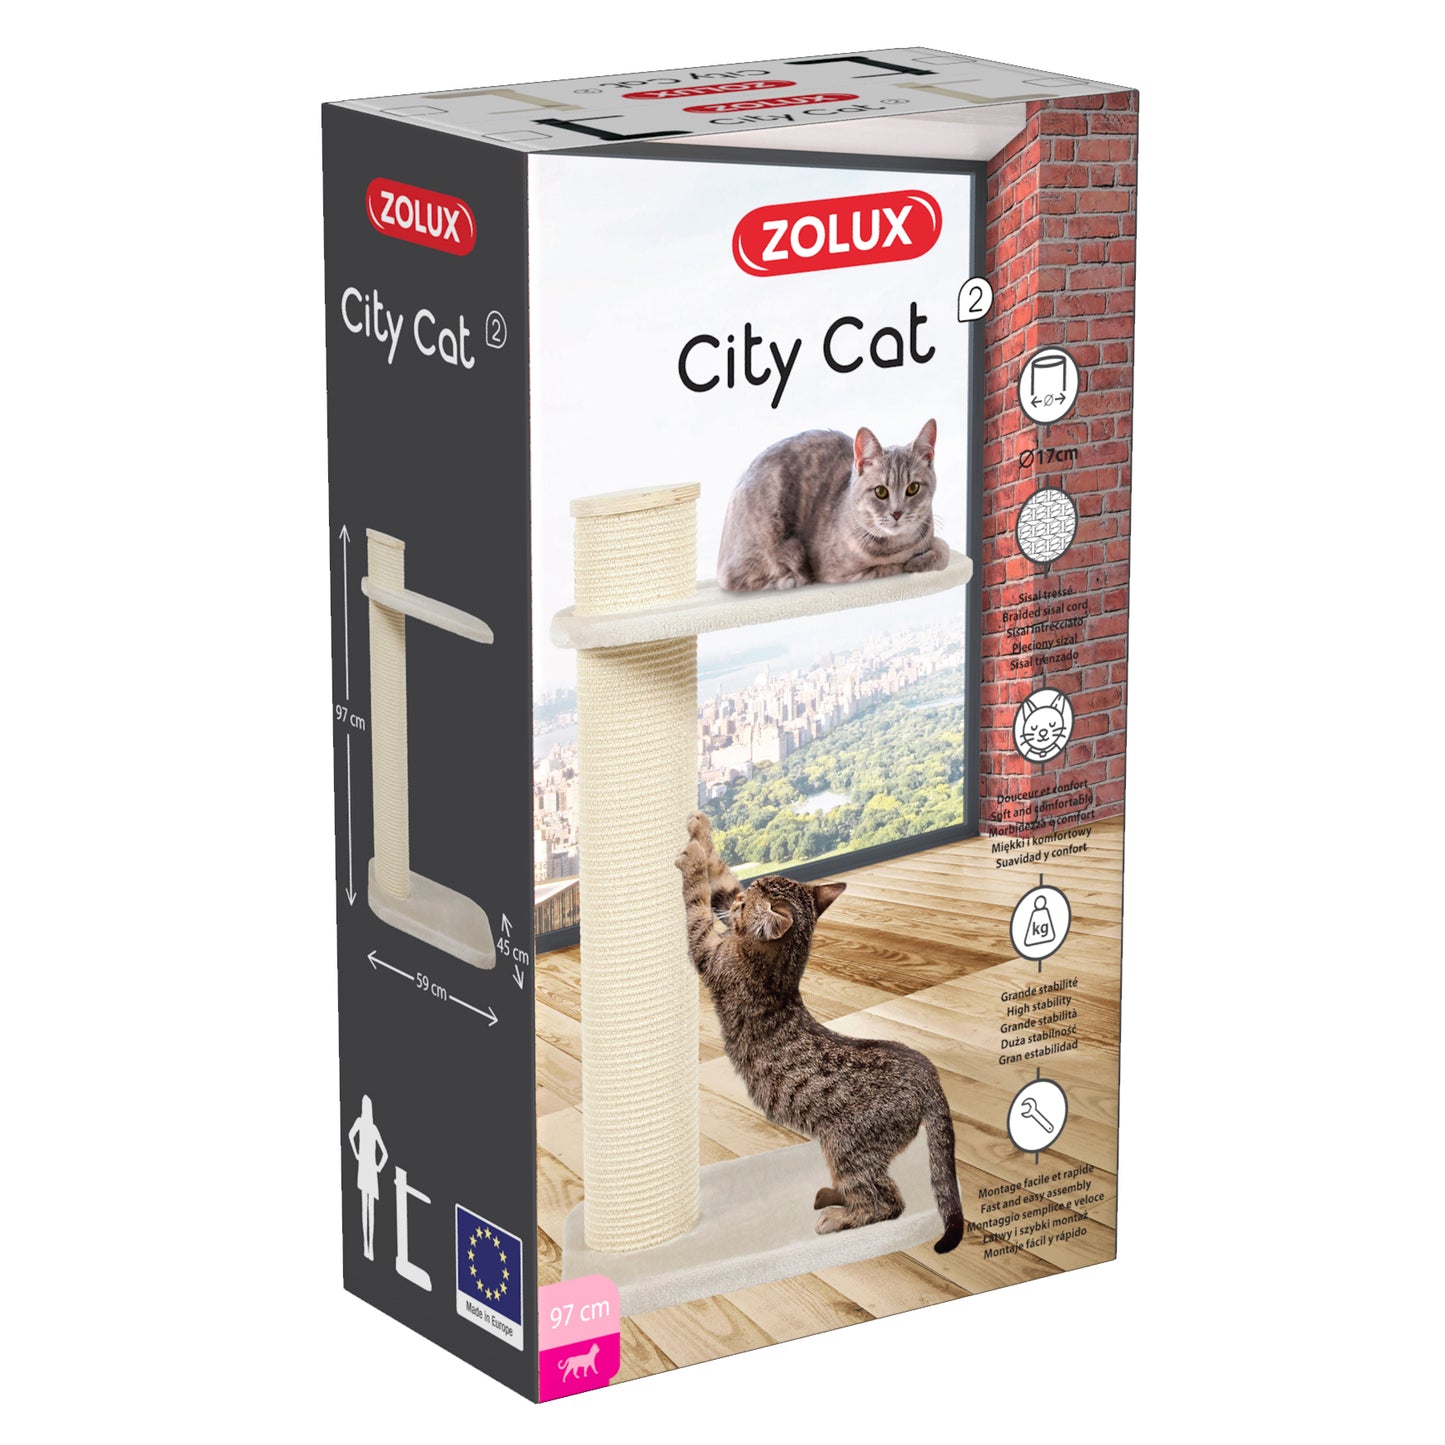 Zolux City Cat 2 Cat Scratching Post Beige  Cat Scratching Posts  | PetMax Canada